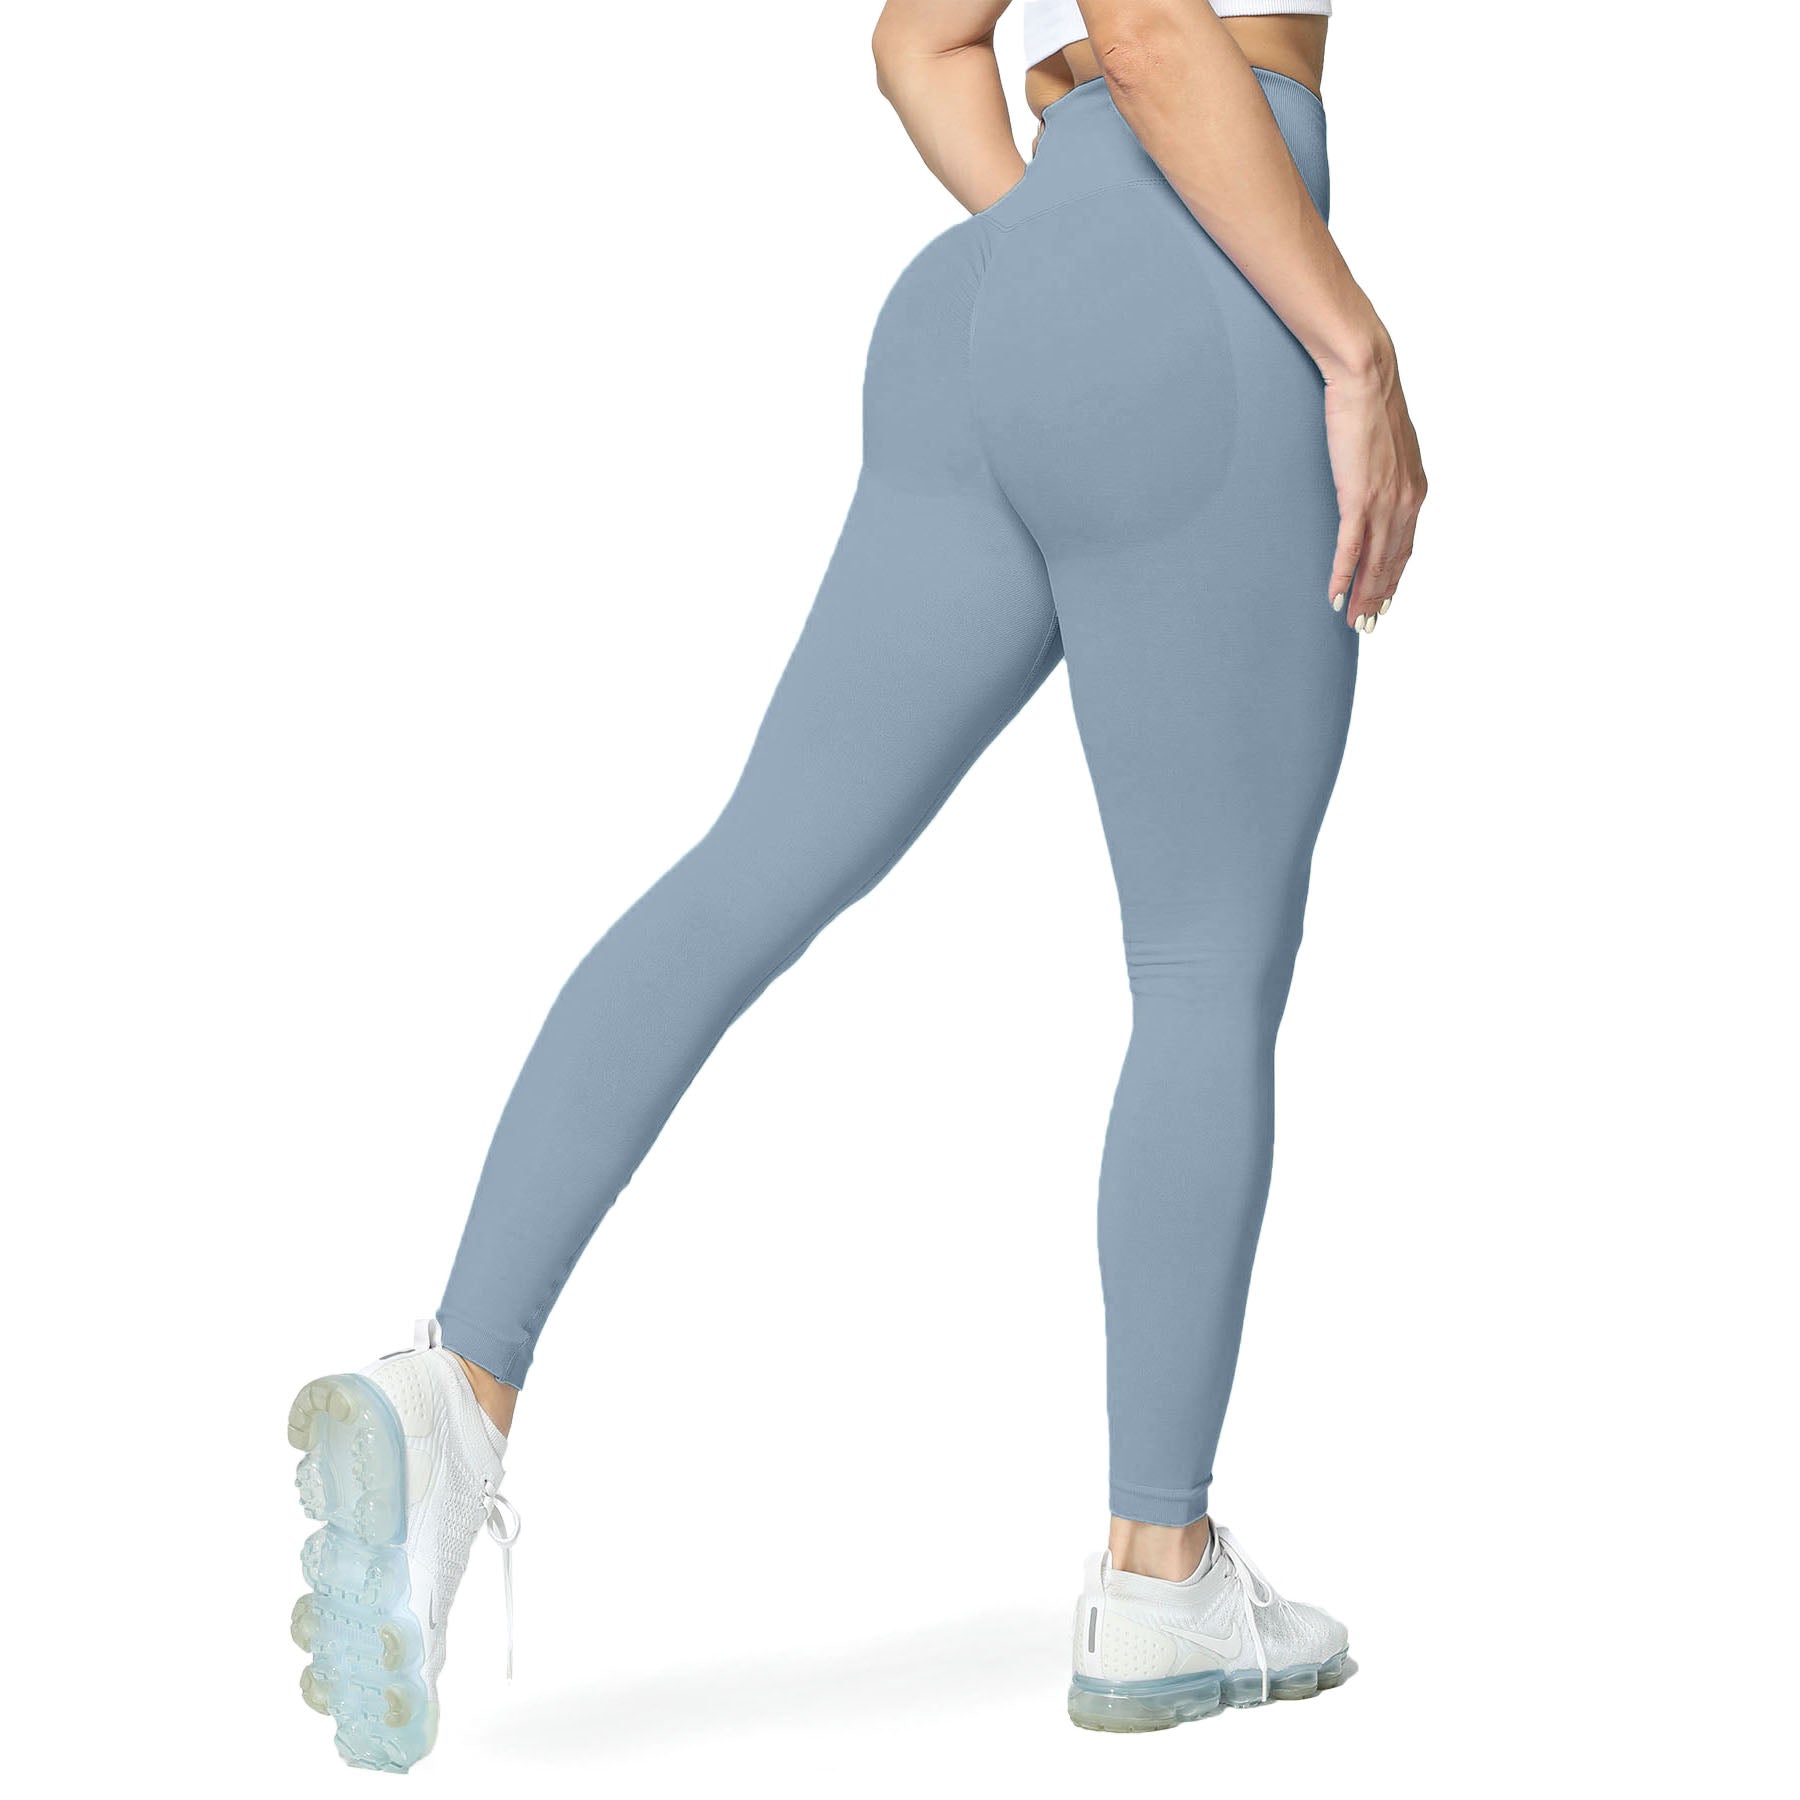 Aoxjox Seamless Workout Leggings for Women High Waist Vital Butt